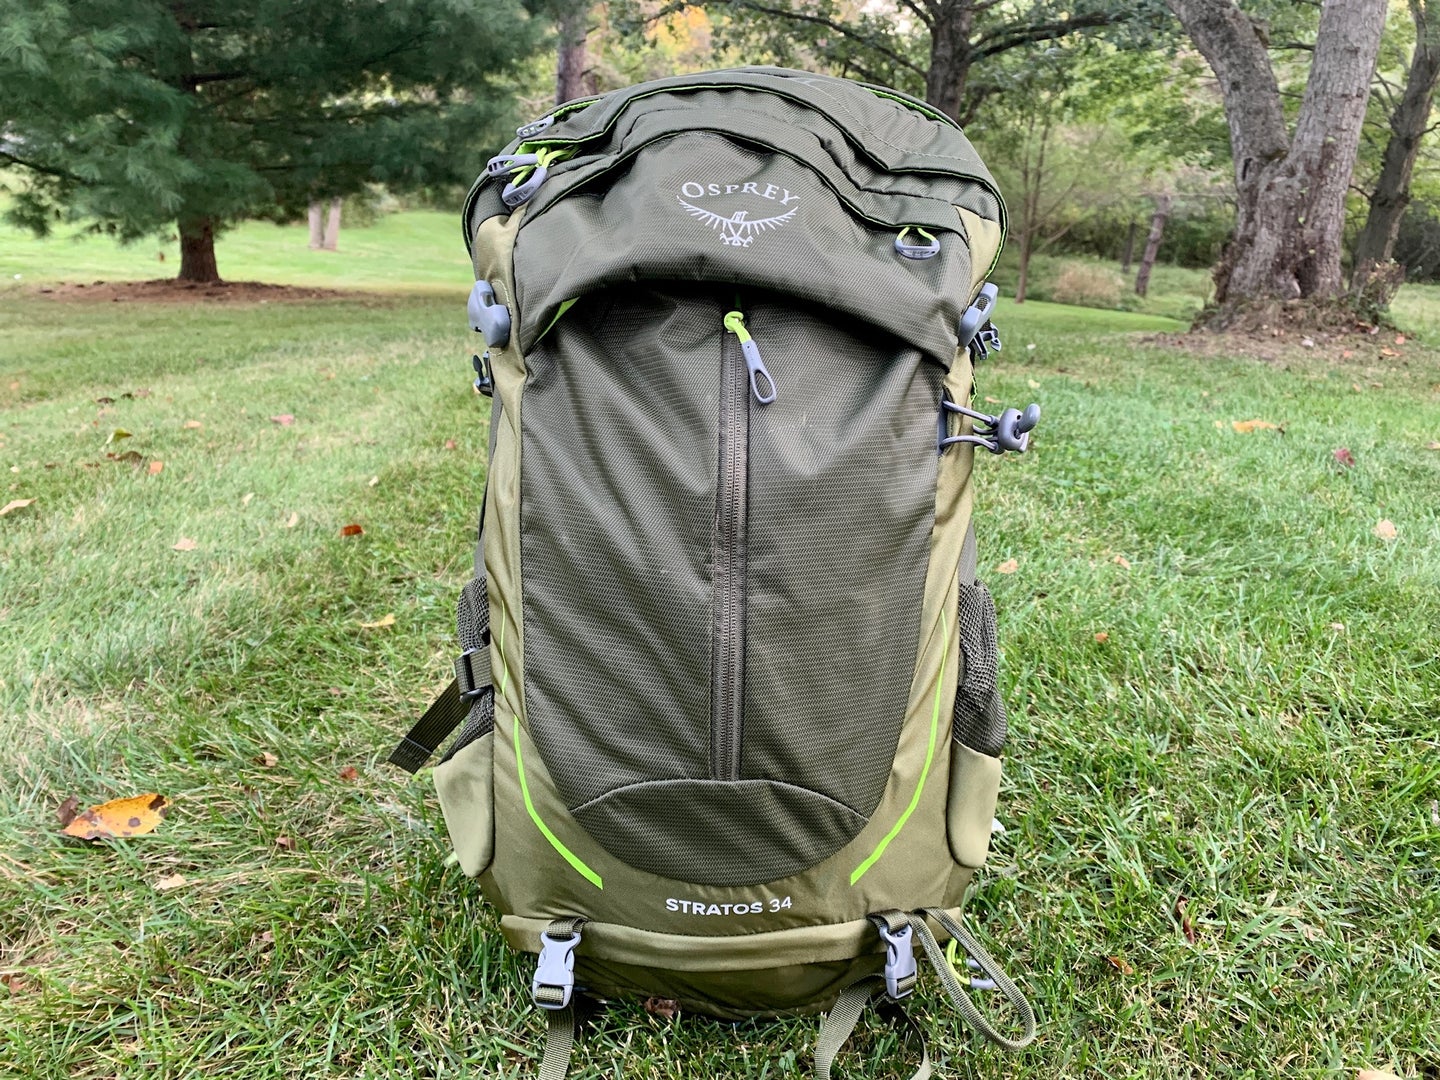 Osprey Stratos 34 hiking backpack